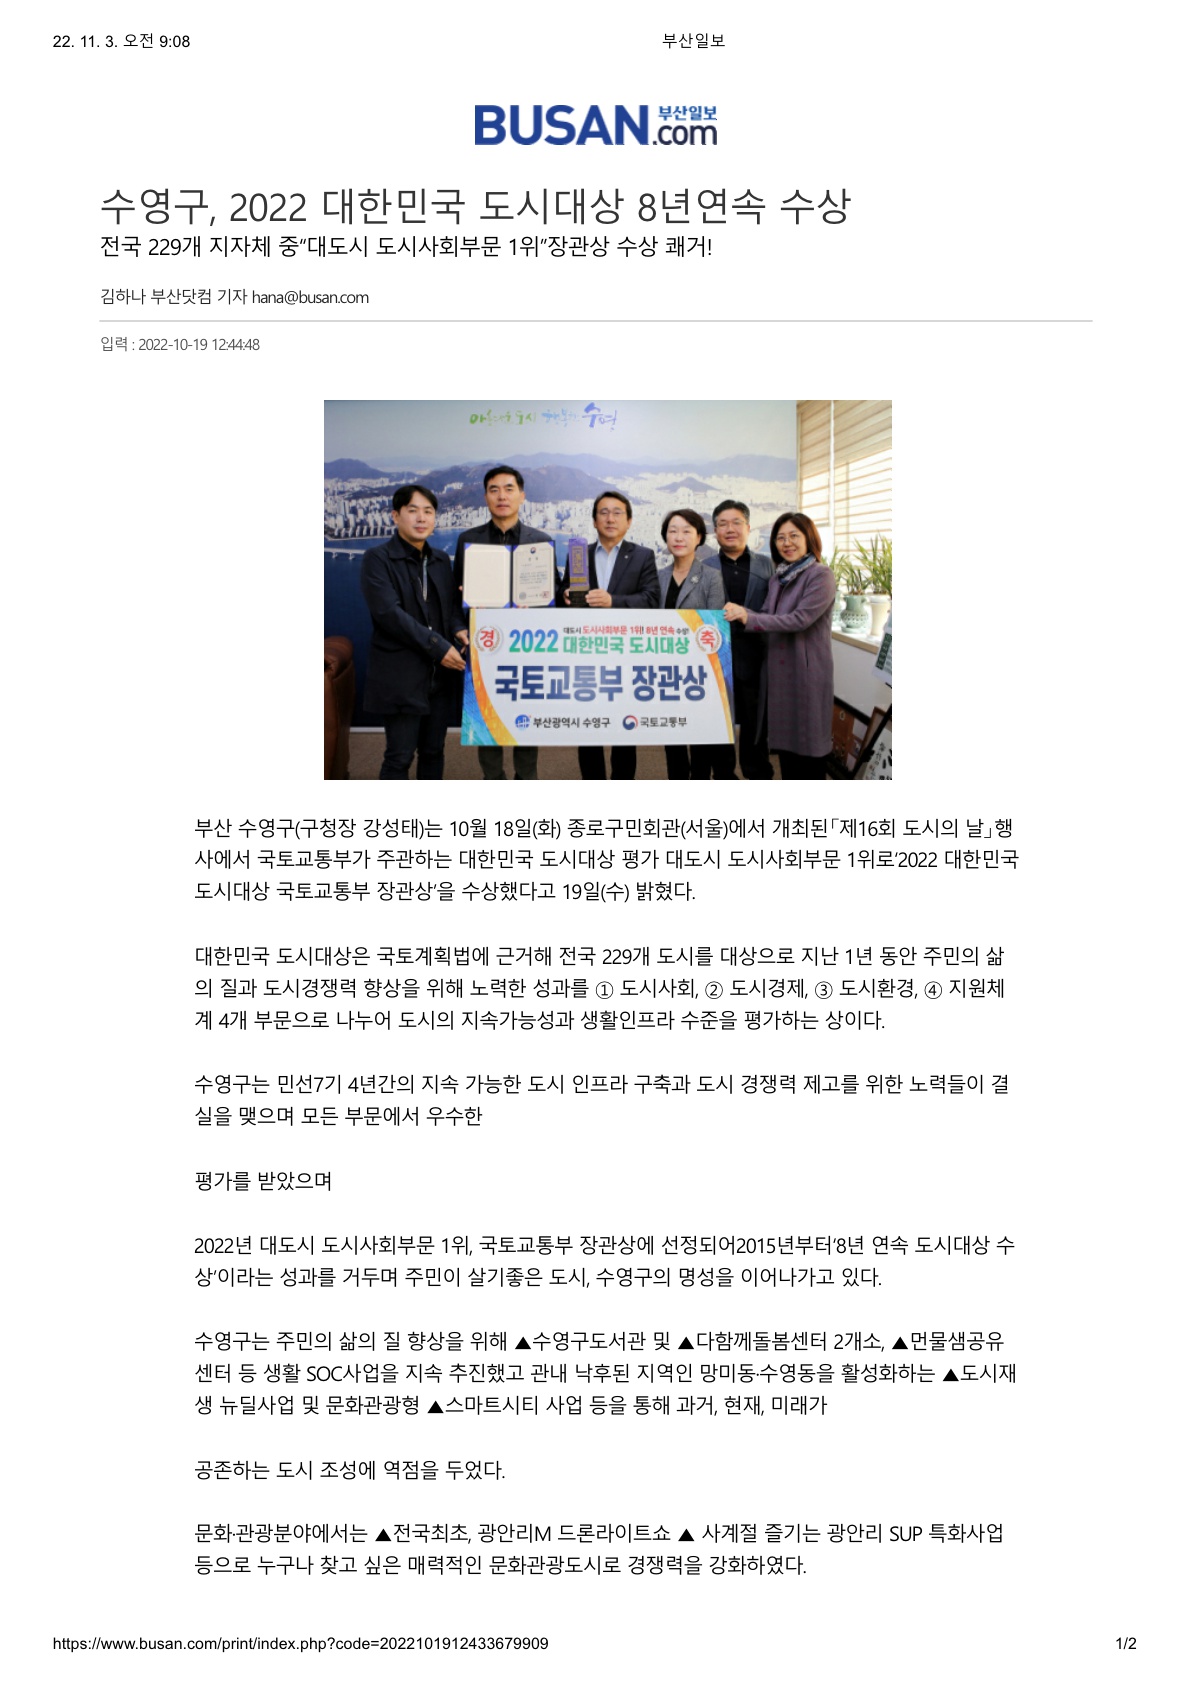 [부산일보]수영구, 2022 대한민국 도시대상 8년 연속 수상 1